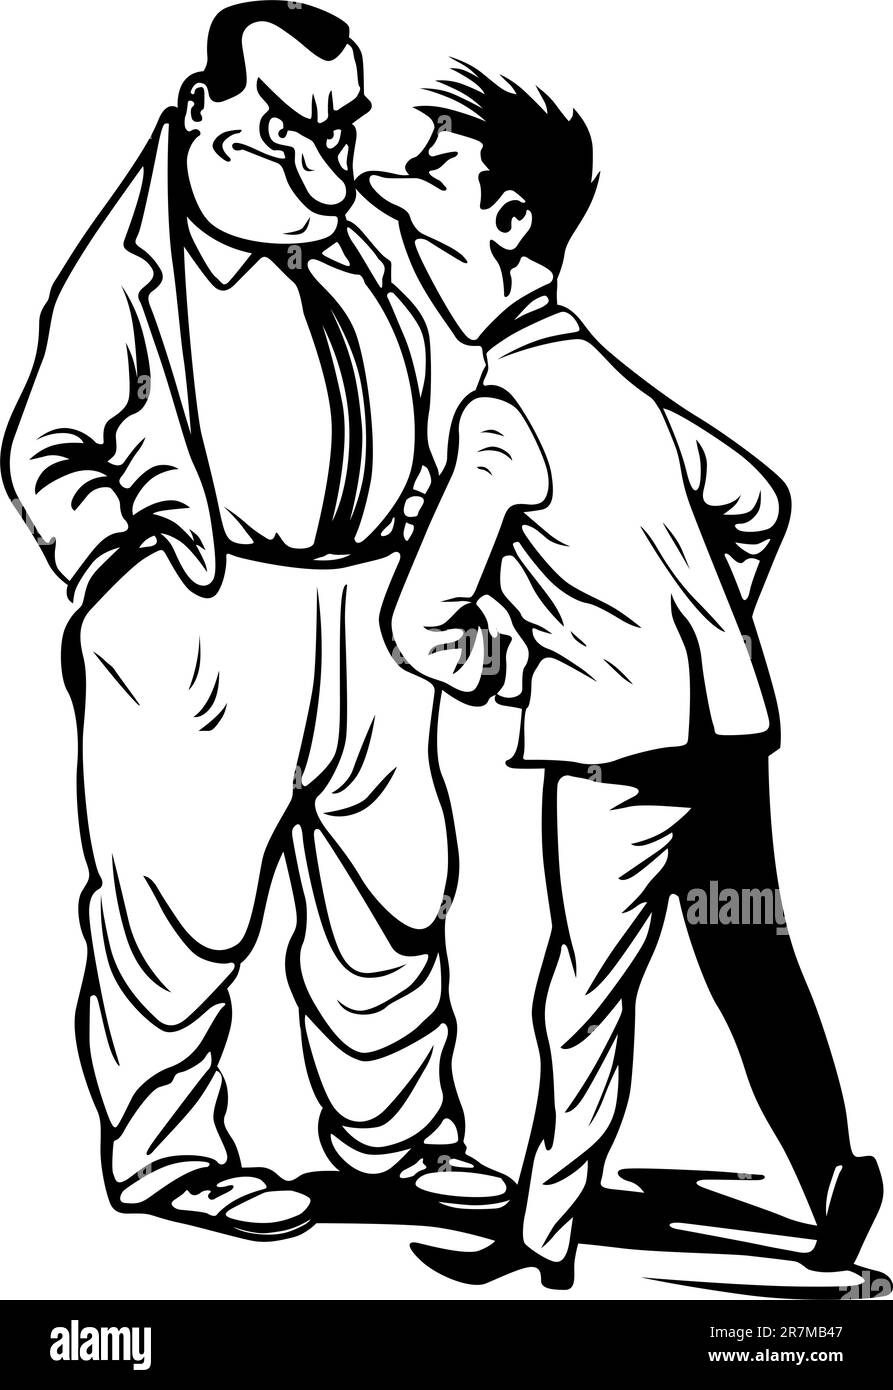 Deux hommes se querellant sur blanc Illustration de Vecteur